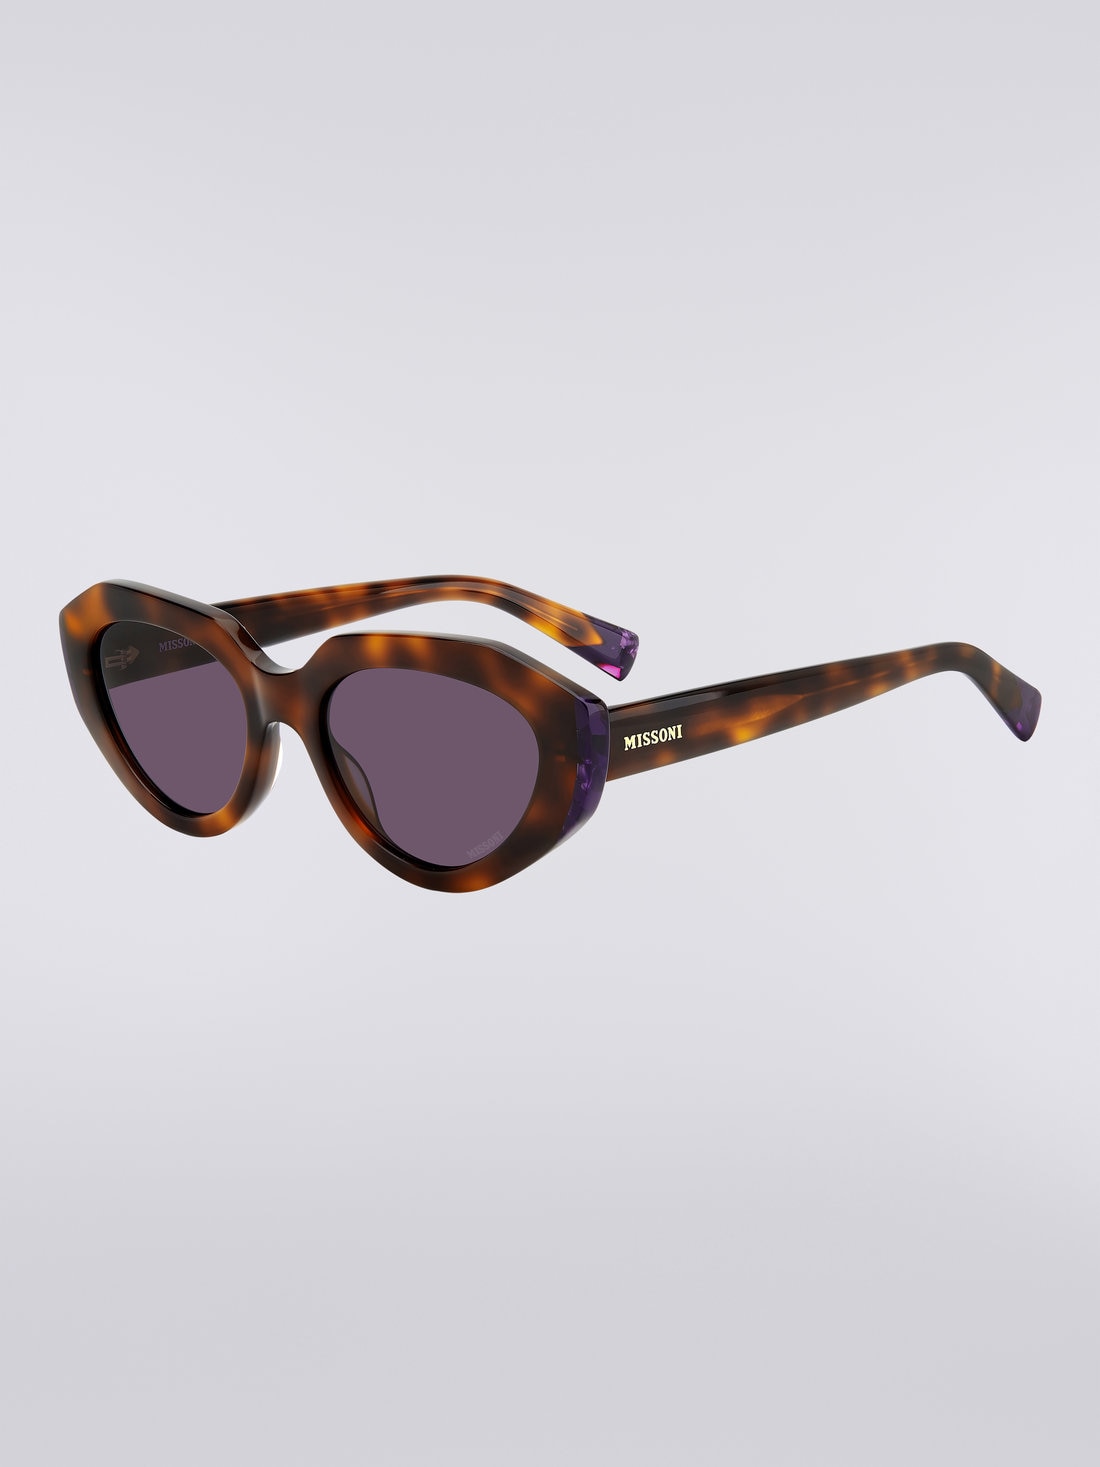 Missoni Seasonal Acetate Sunglasses, Multicoloured  - 8051575840173 - 1